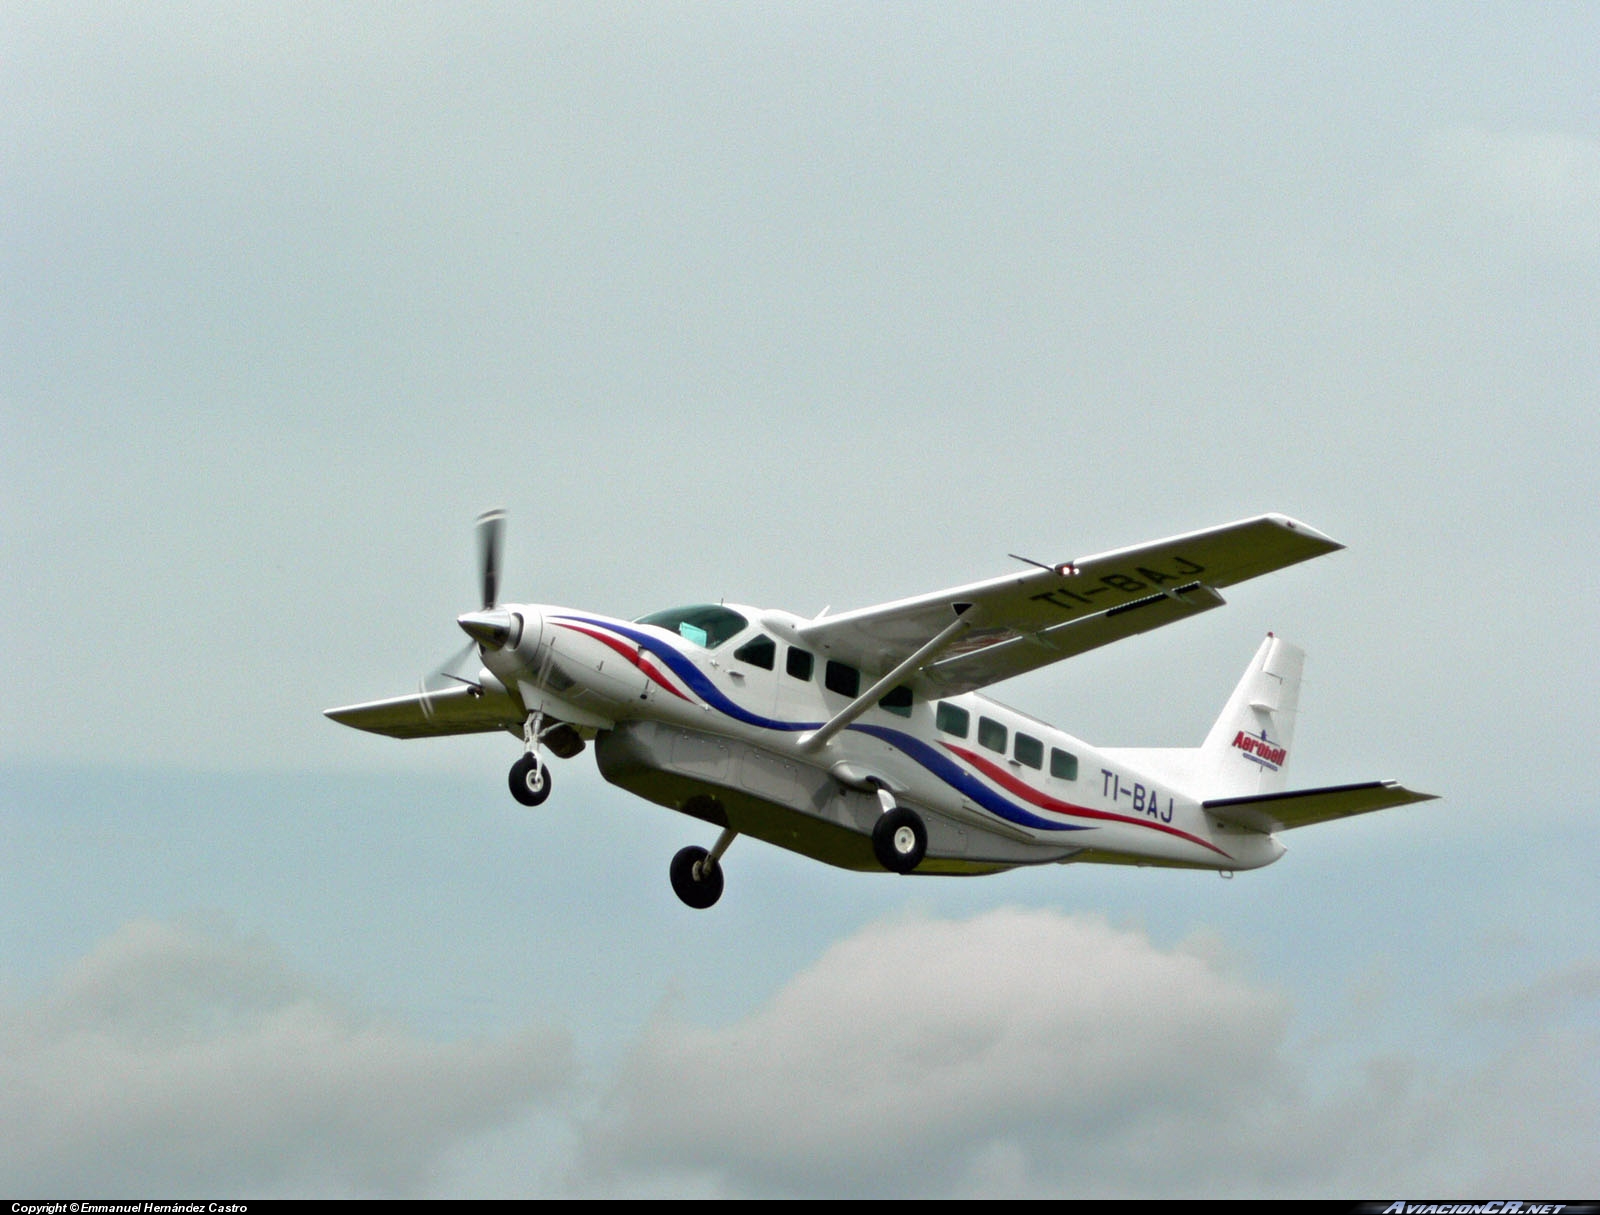 TI-BAJ - Cessna 208B Grand Caravan - Aerobell